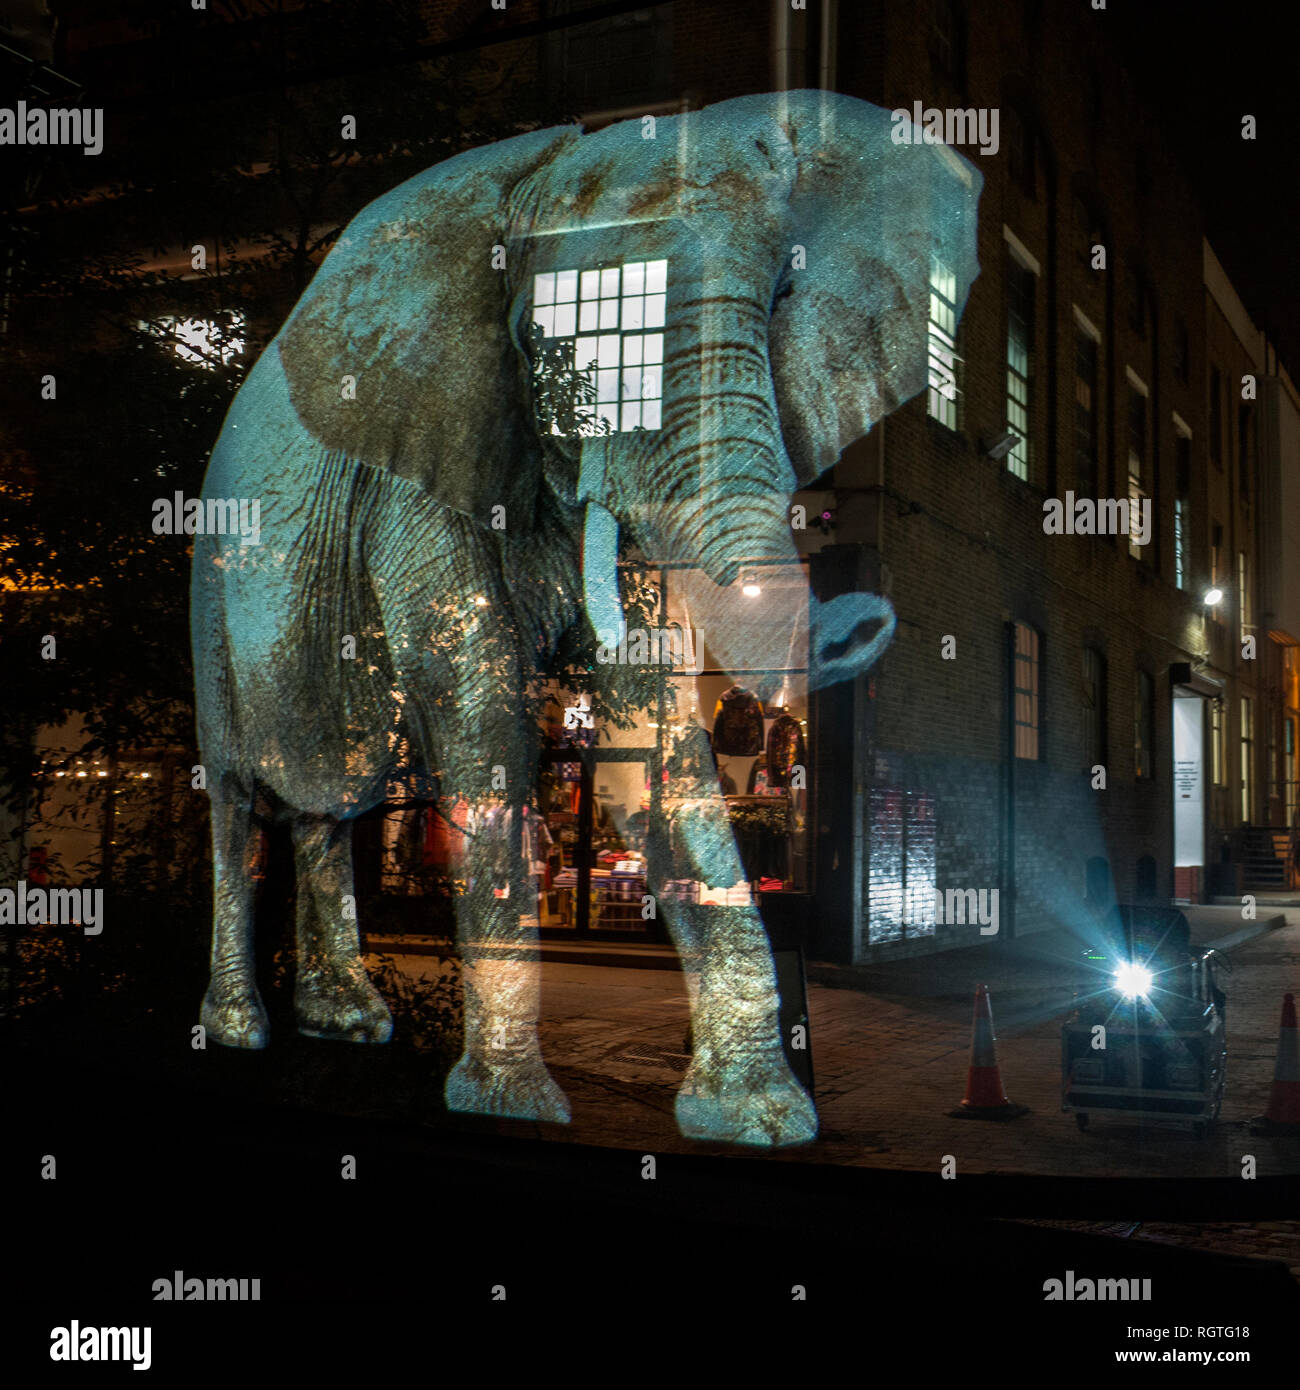 Le WWF elephant hologramme projeté sur les rues de Shoreditch Londres Banque D'Images